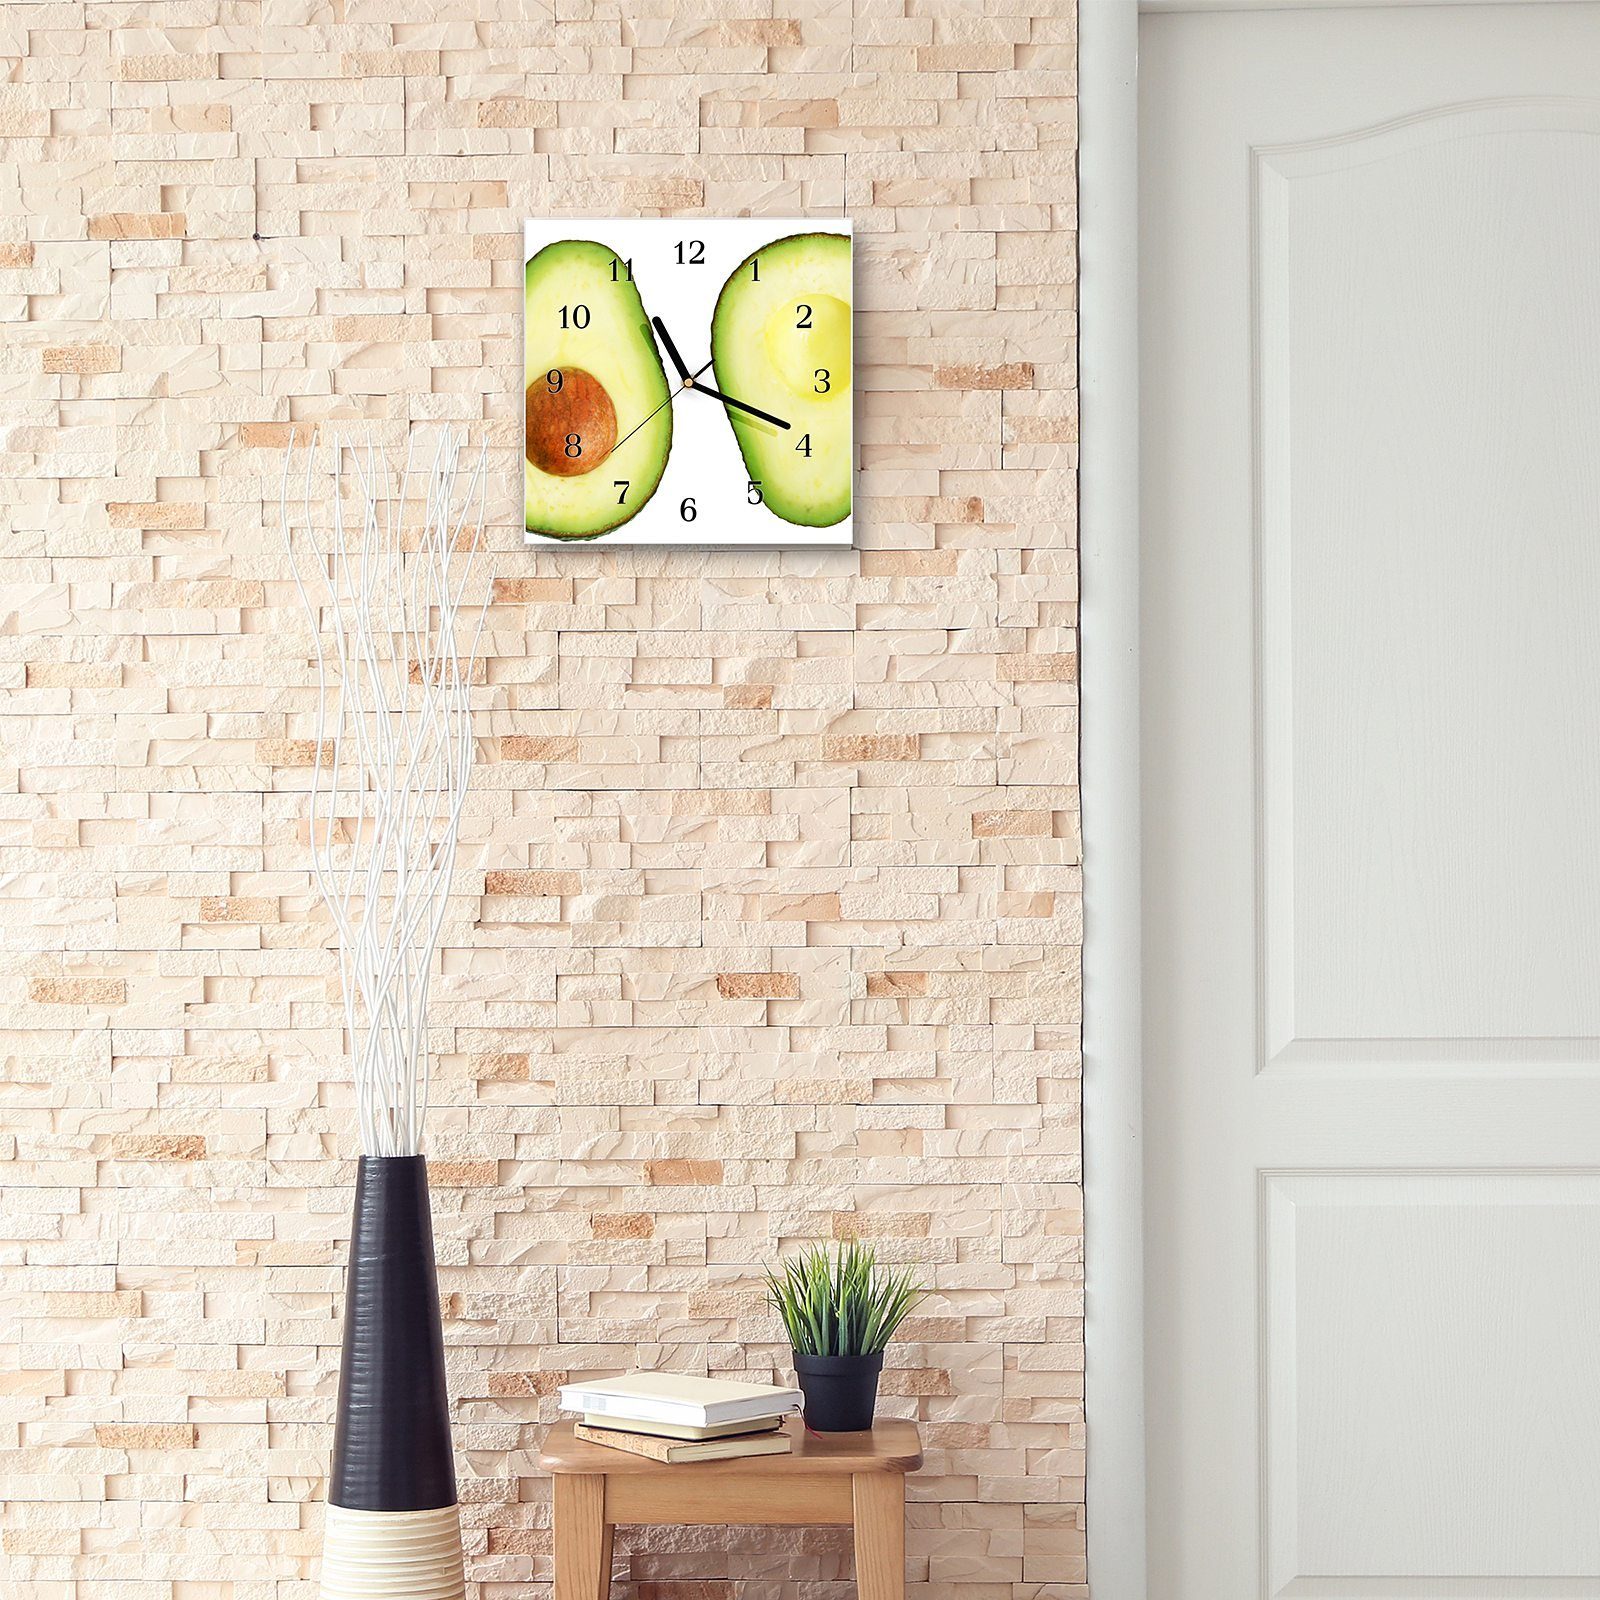 30 Größe Primedeco Wanduhr x 30 cm Avocado Motiv halbiert Wandkunst Wanduhr Glasuhr mit